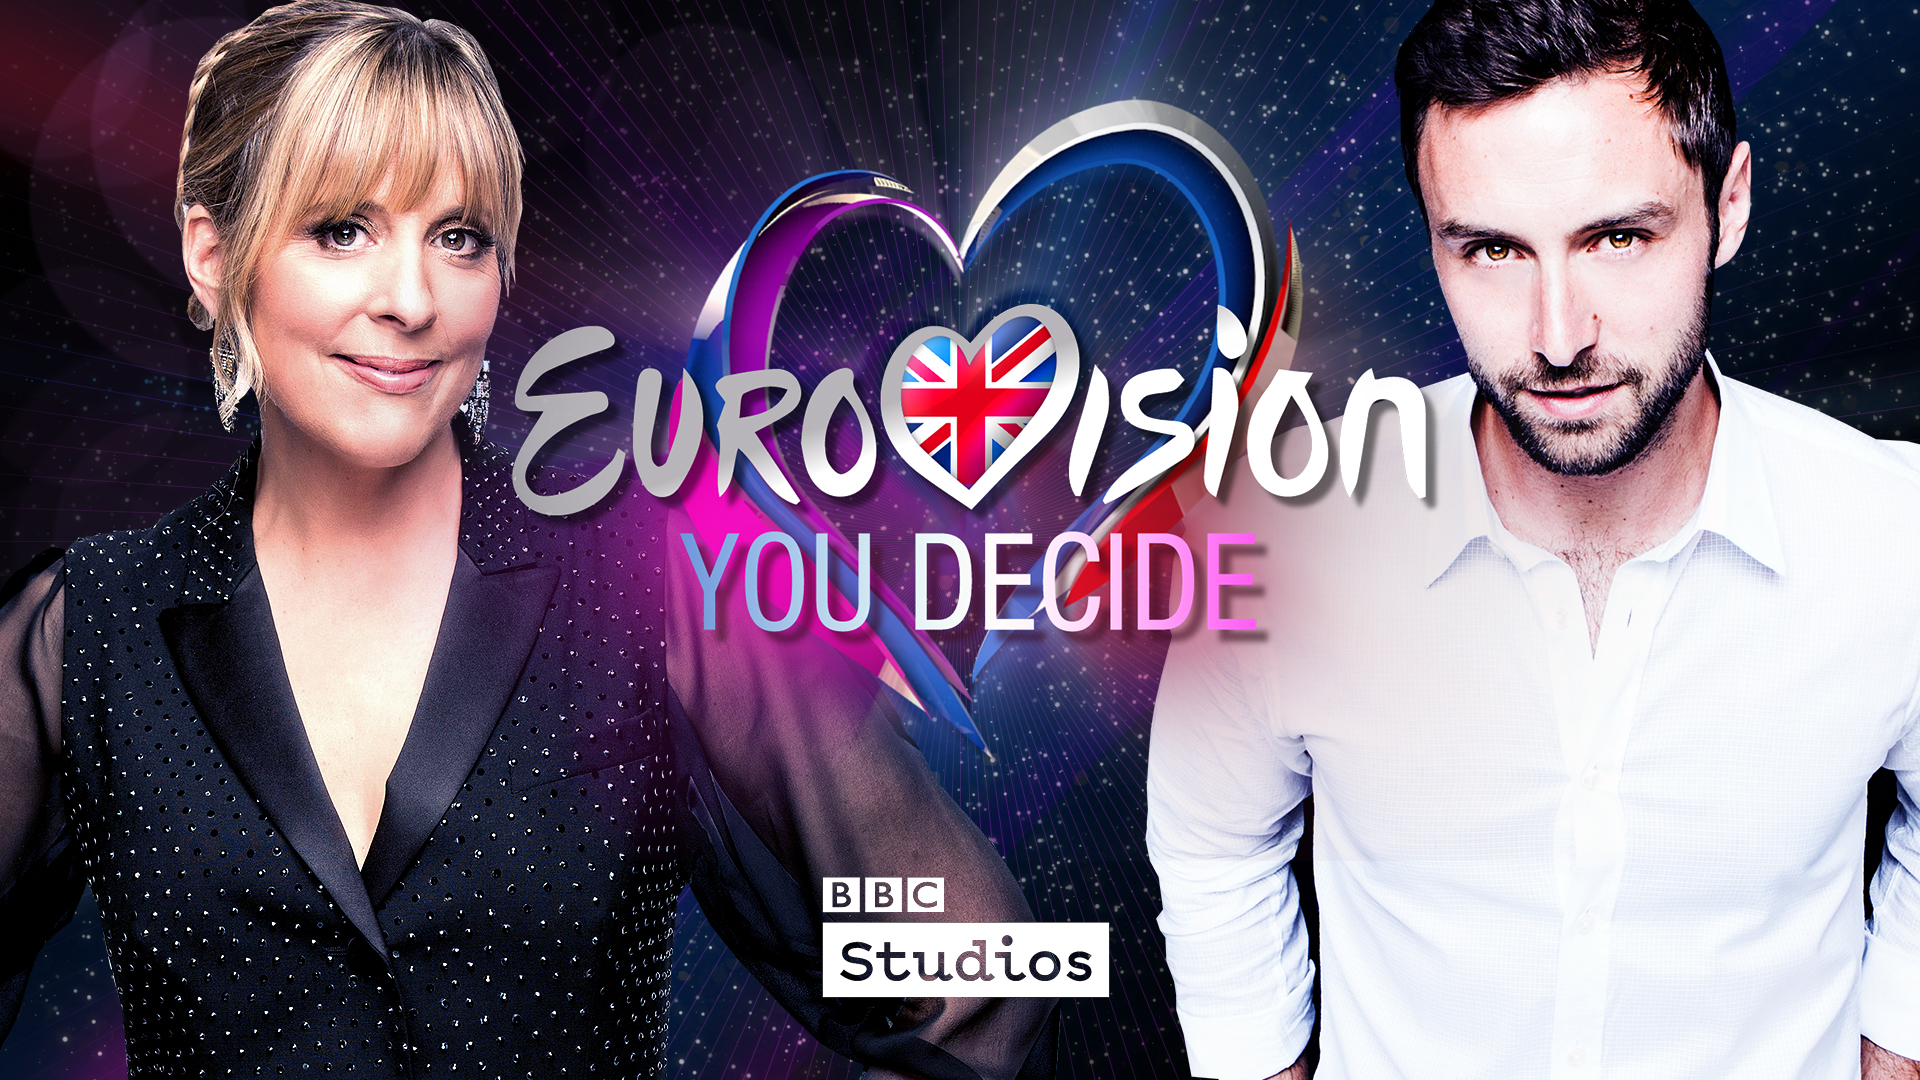 eurovision you decide